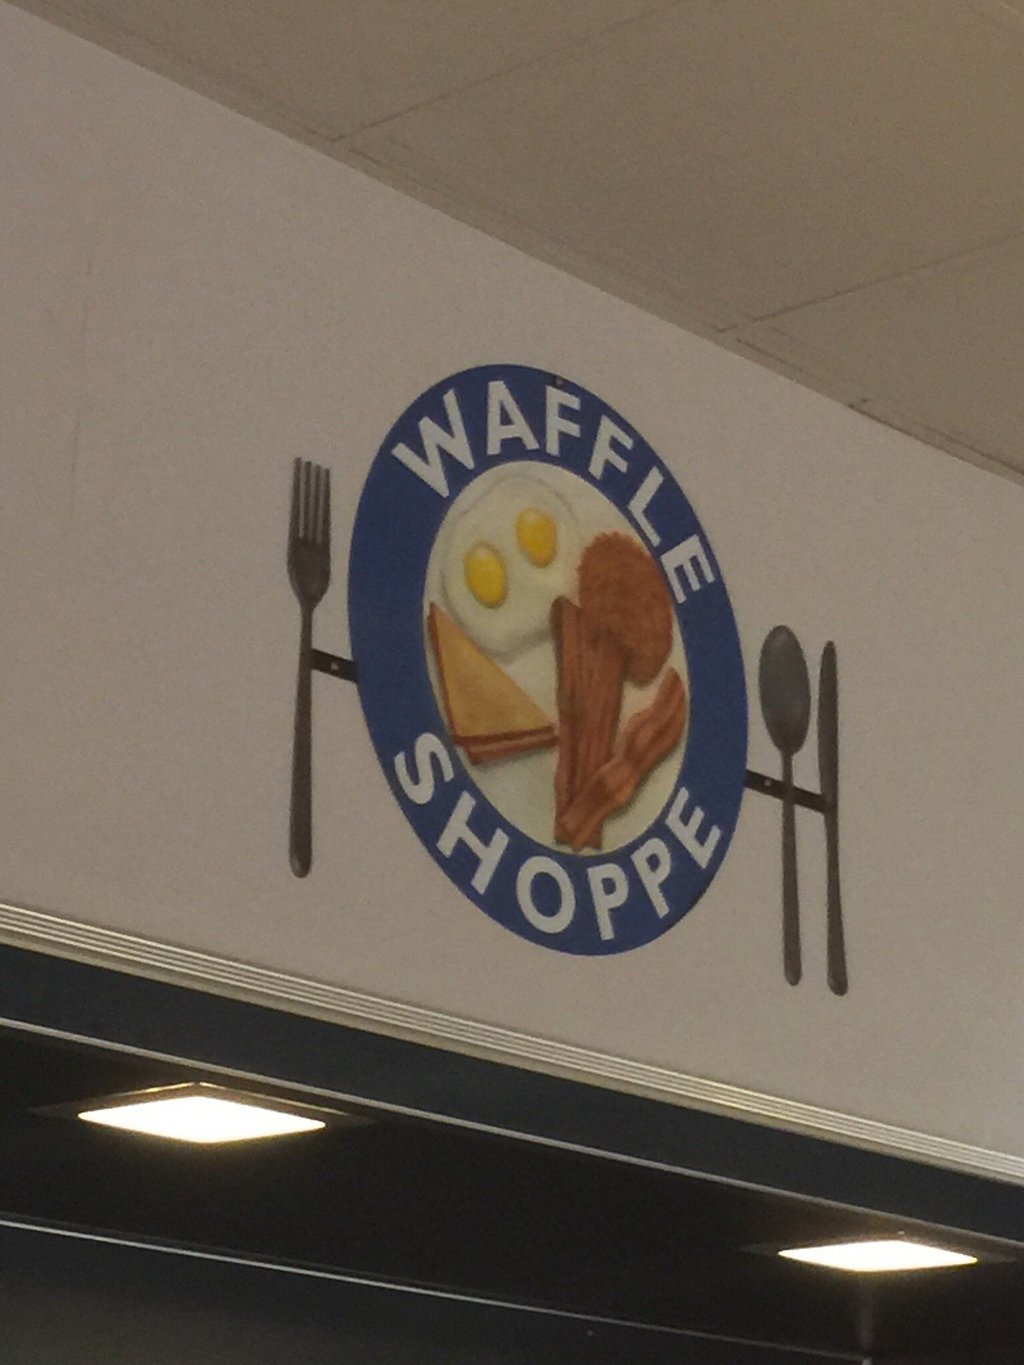 Waffle Shoppe